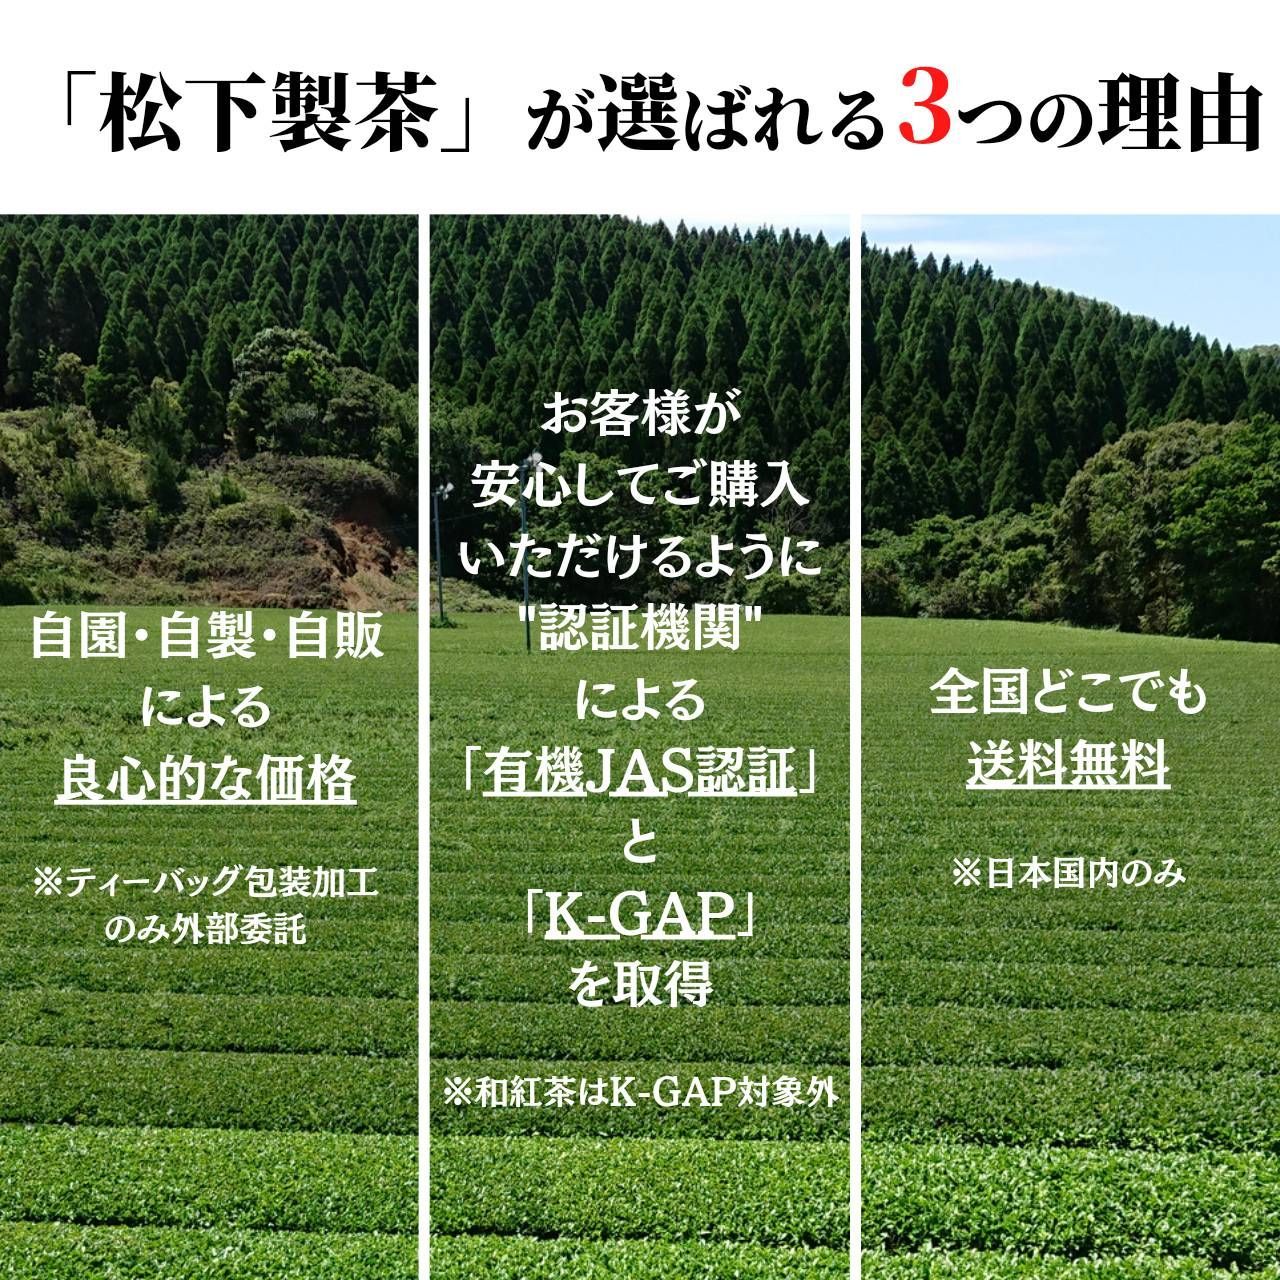 【2022年産】種子島の有機緑茶『さえみどり』 茶葉(リーフ) 100g-2